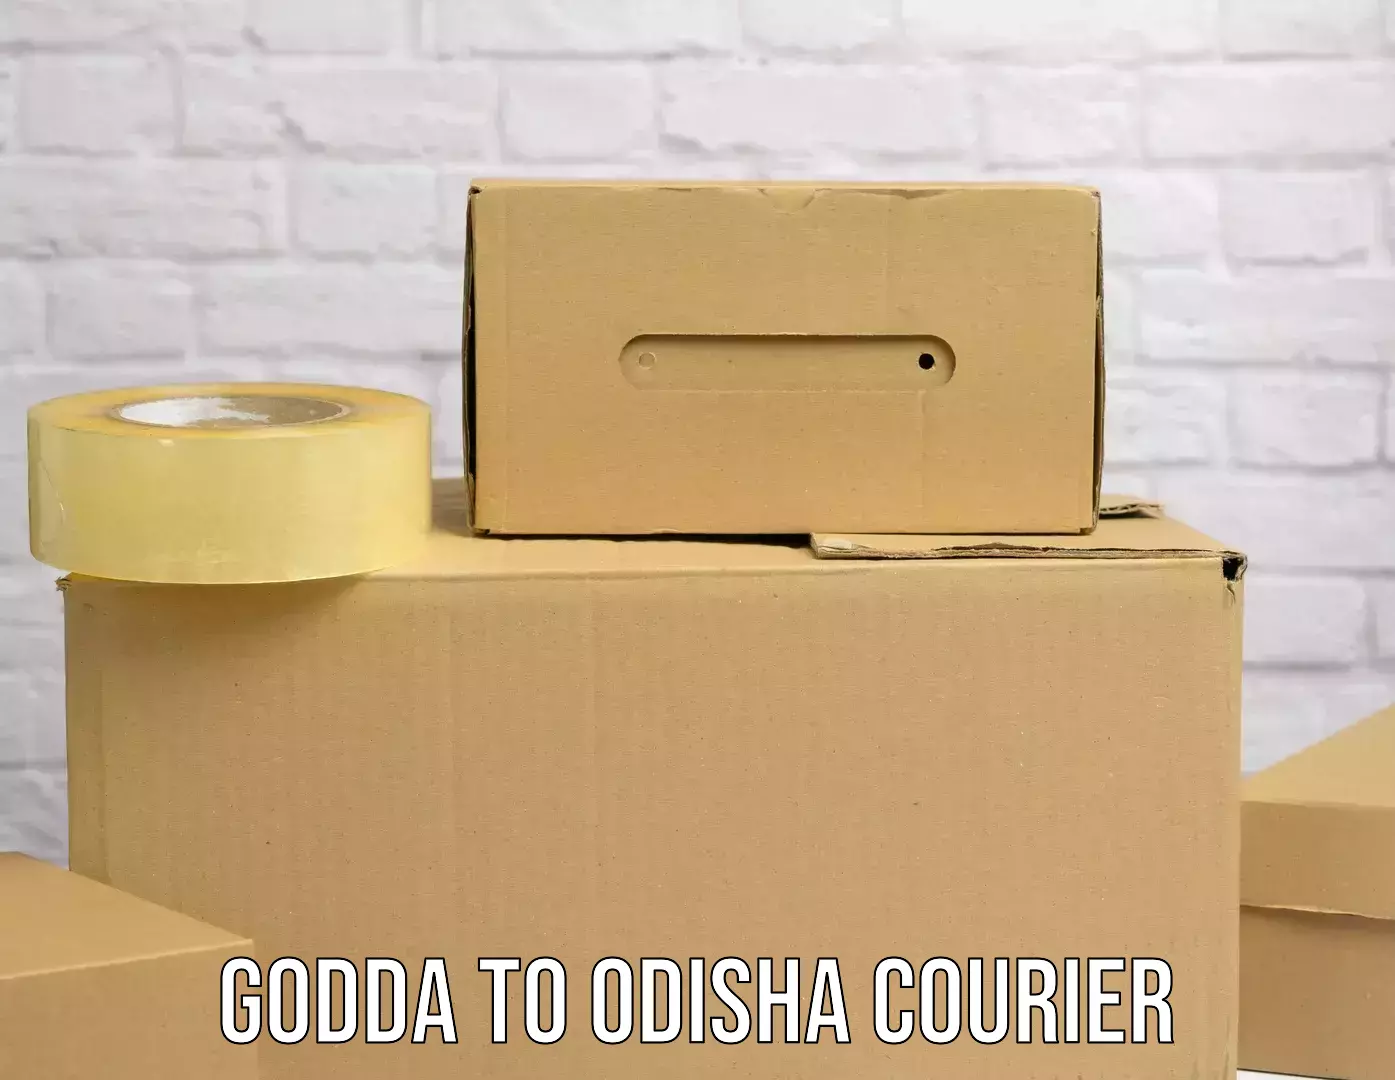 Enhanced tracking features Godda to Udala